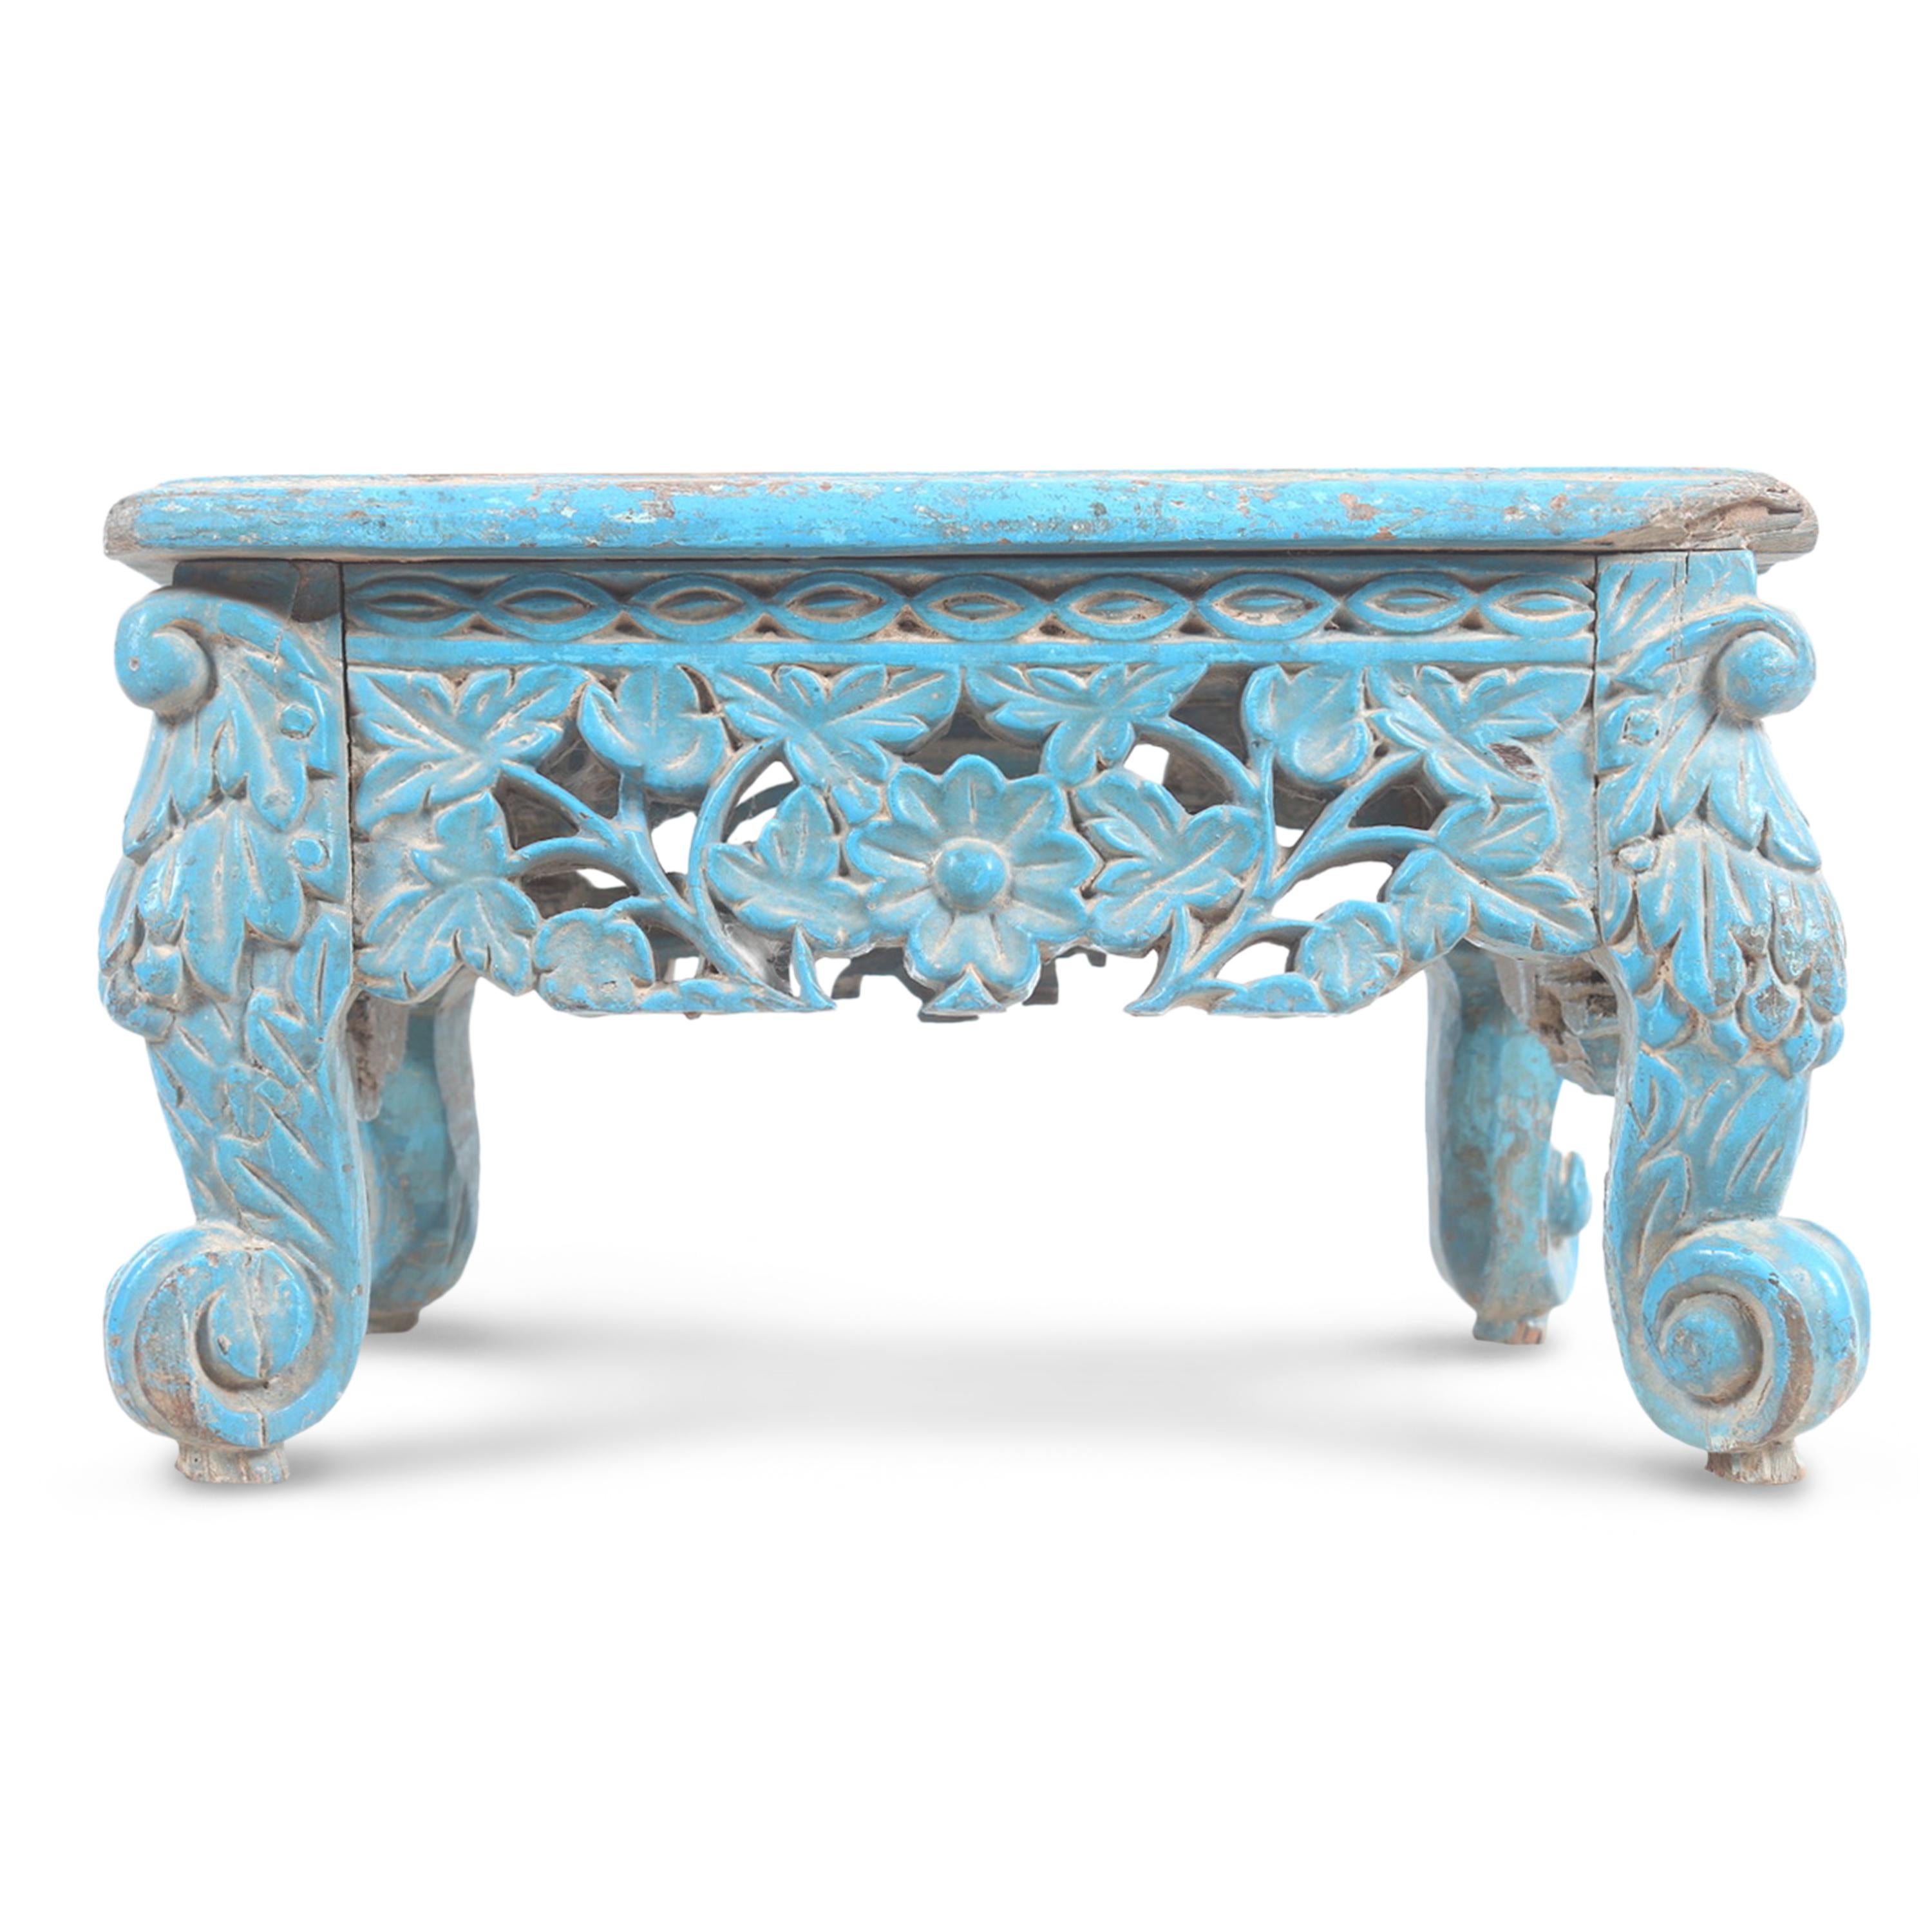 Ein einzigartiger anglo-indischer Tisch/Stock aus geschnitztem Teakholz. Die ursprüngliche blaue Farbe, die außergewöhnlich geschnitzten Details und die verwitterte Patina verleihen diesem Stück eine besondere Persönlichkeit.